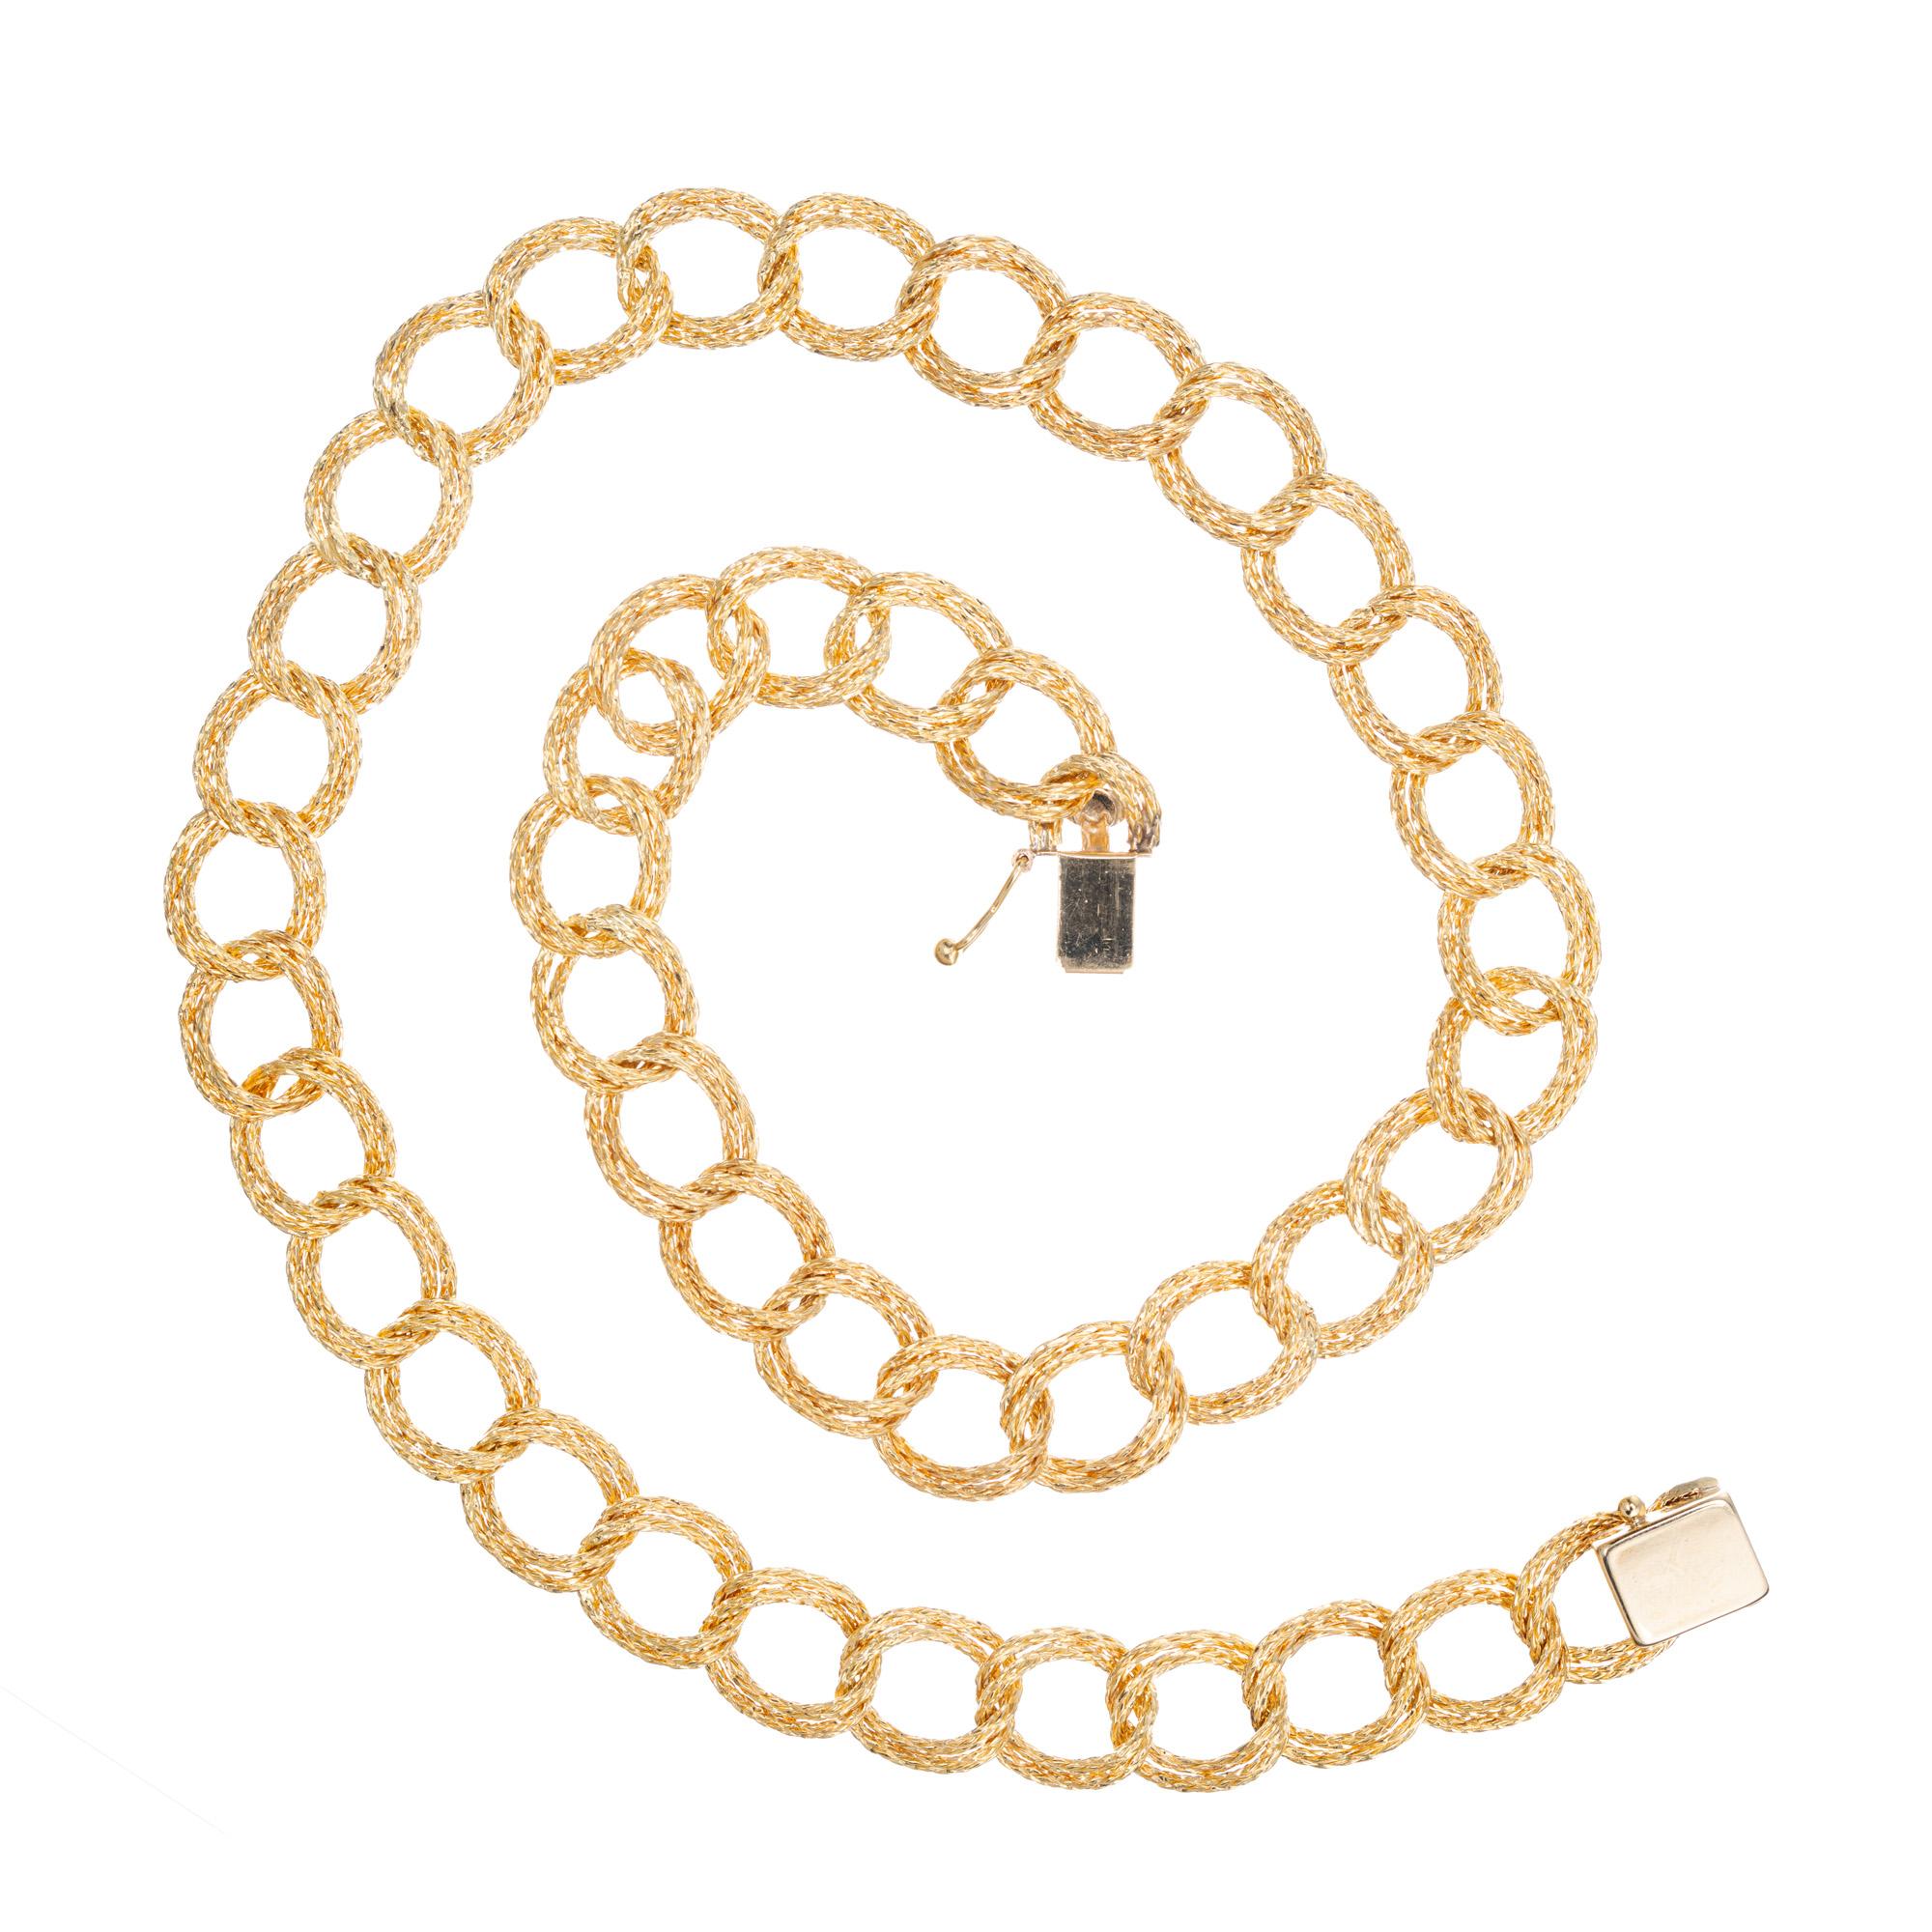 1950's Mitte des Jahrhunderts wesentliche strukturierte Doppelgliederkette Halskette. Wunderschön detaillierte 14k Gelbgold doppelte offene Links, die 11,5 mm im Durchmesser messen. 18 Zoll in der Länge mit einer Figur acht Verschluss. 

14k